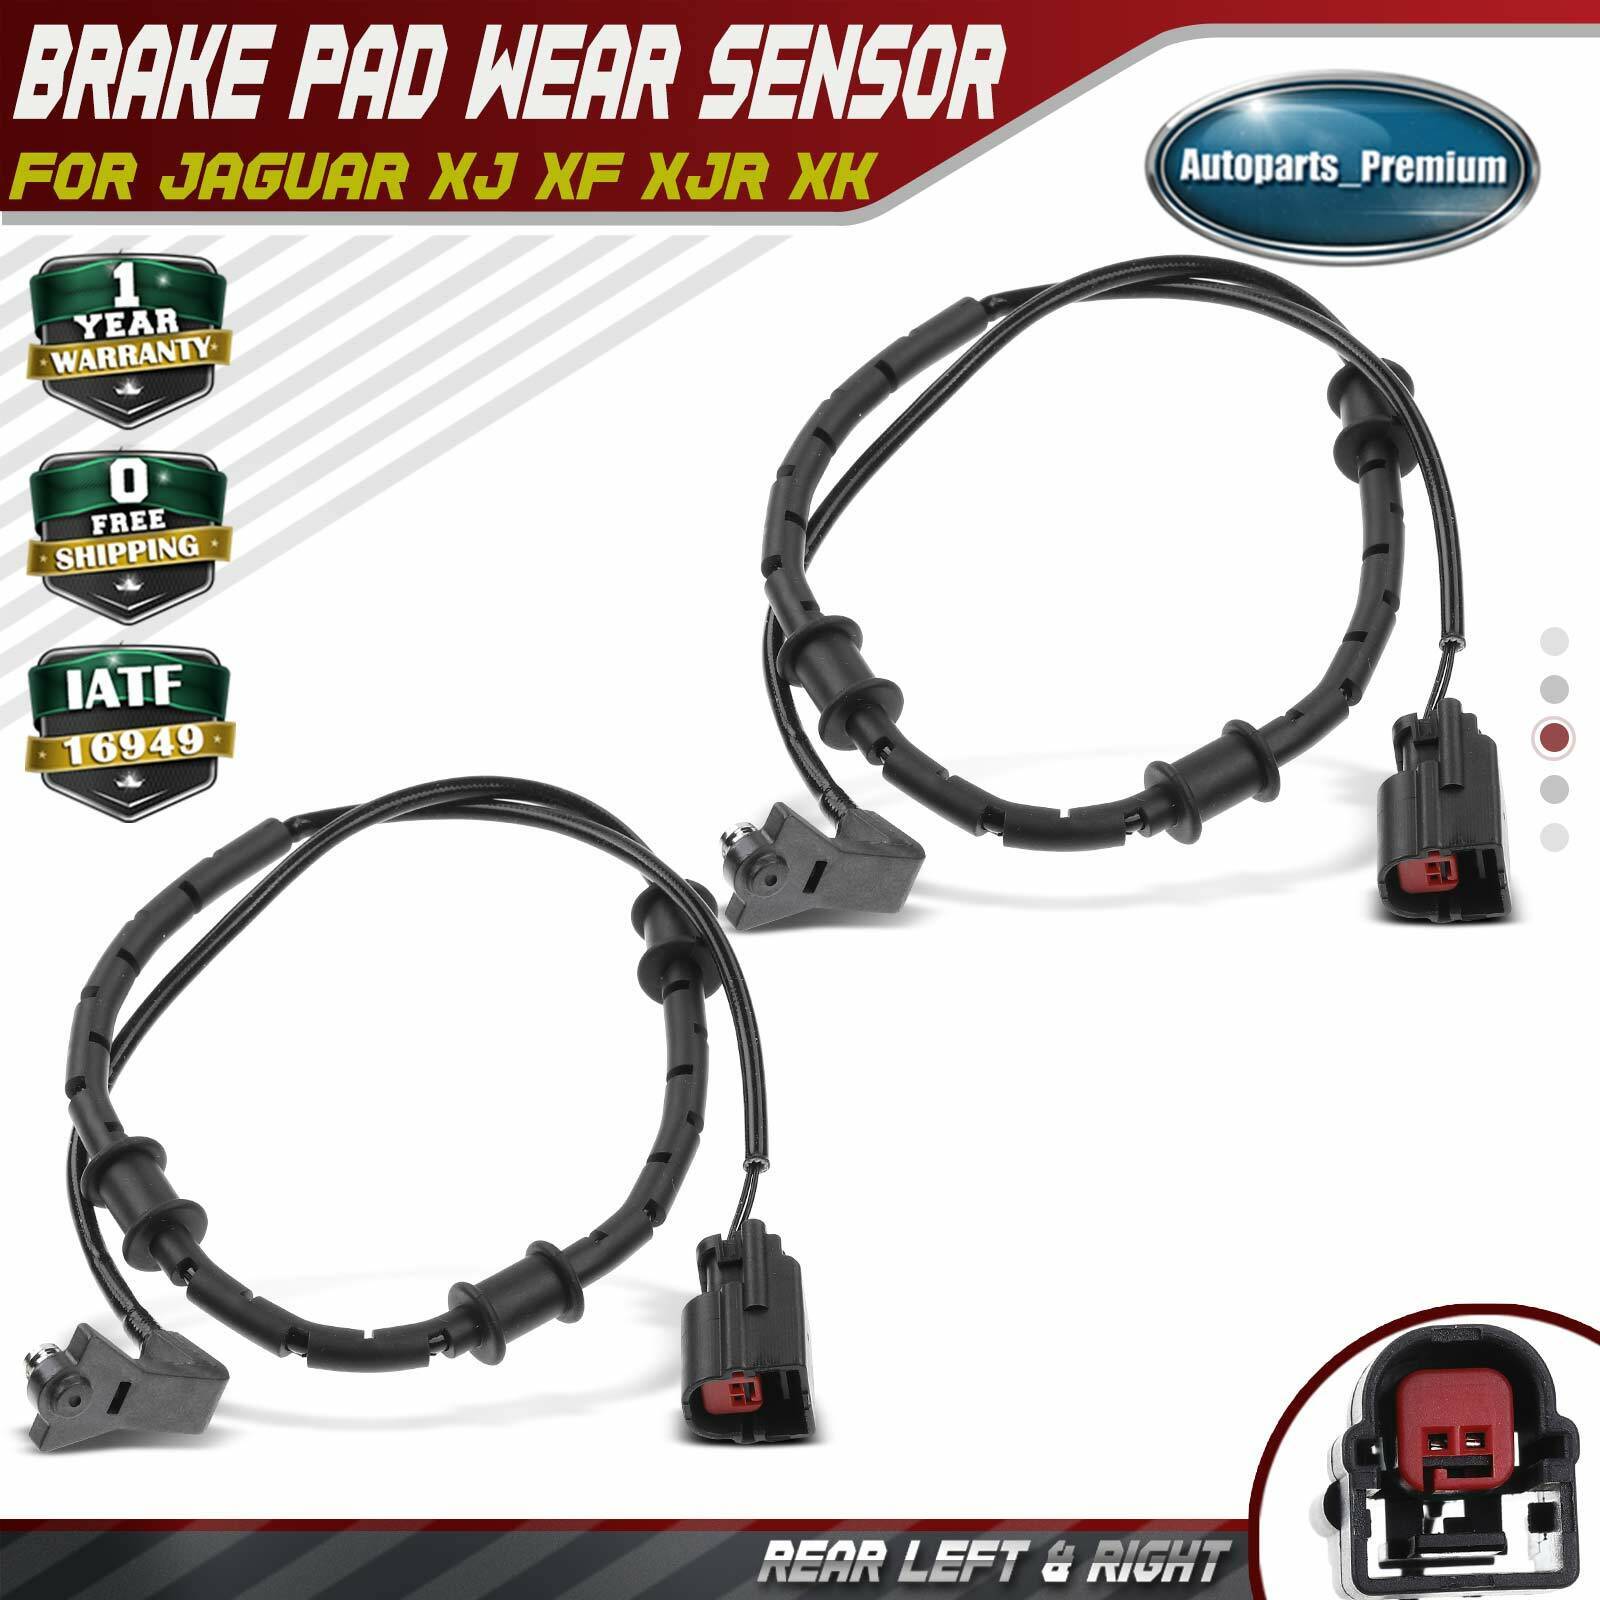 2x Rear Disc Brake Pad Wear Sensor for Jaguar XJ 10-17 XJR XK XKR XF XFR XFR-S